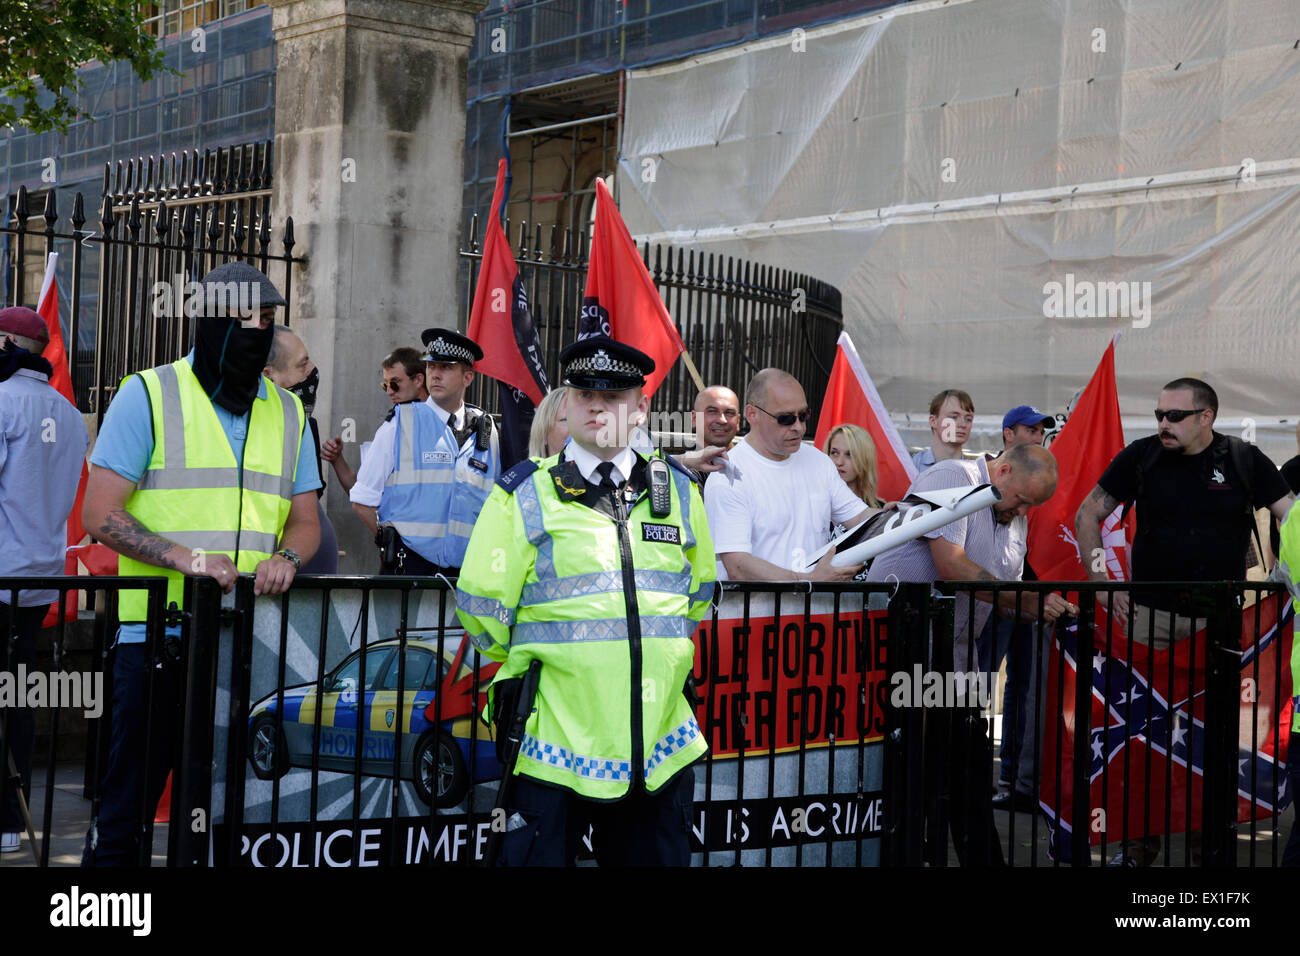 Westminster, London, UK, 4. Juli 2015. Protest gegen die "Verjudung" von London vom weit rechten Flügel Gruppe Credit: fantastische Kaninchen/Alamy Live News Stockfoto